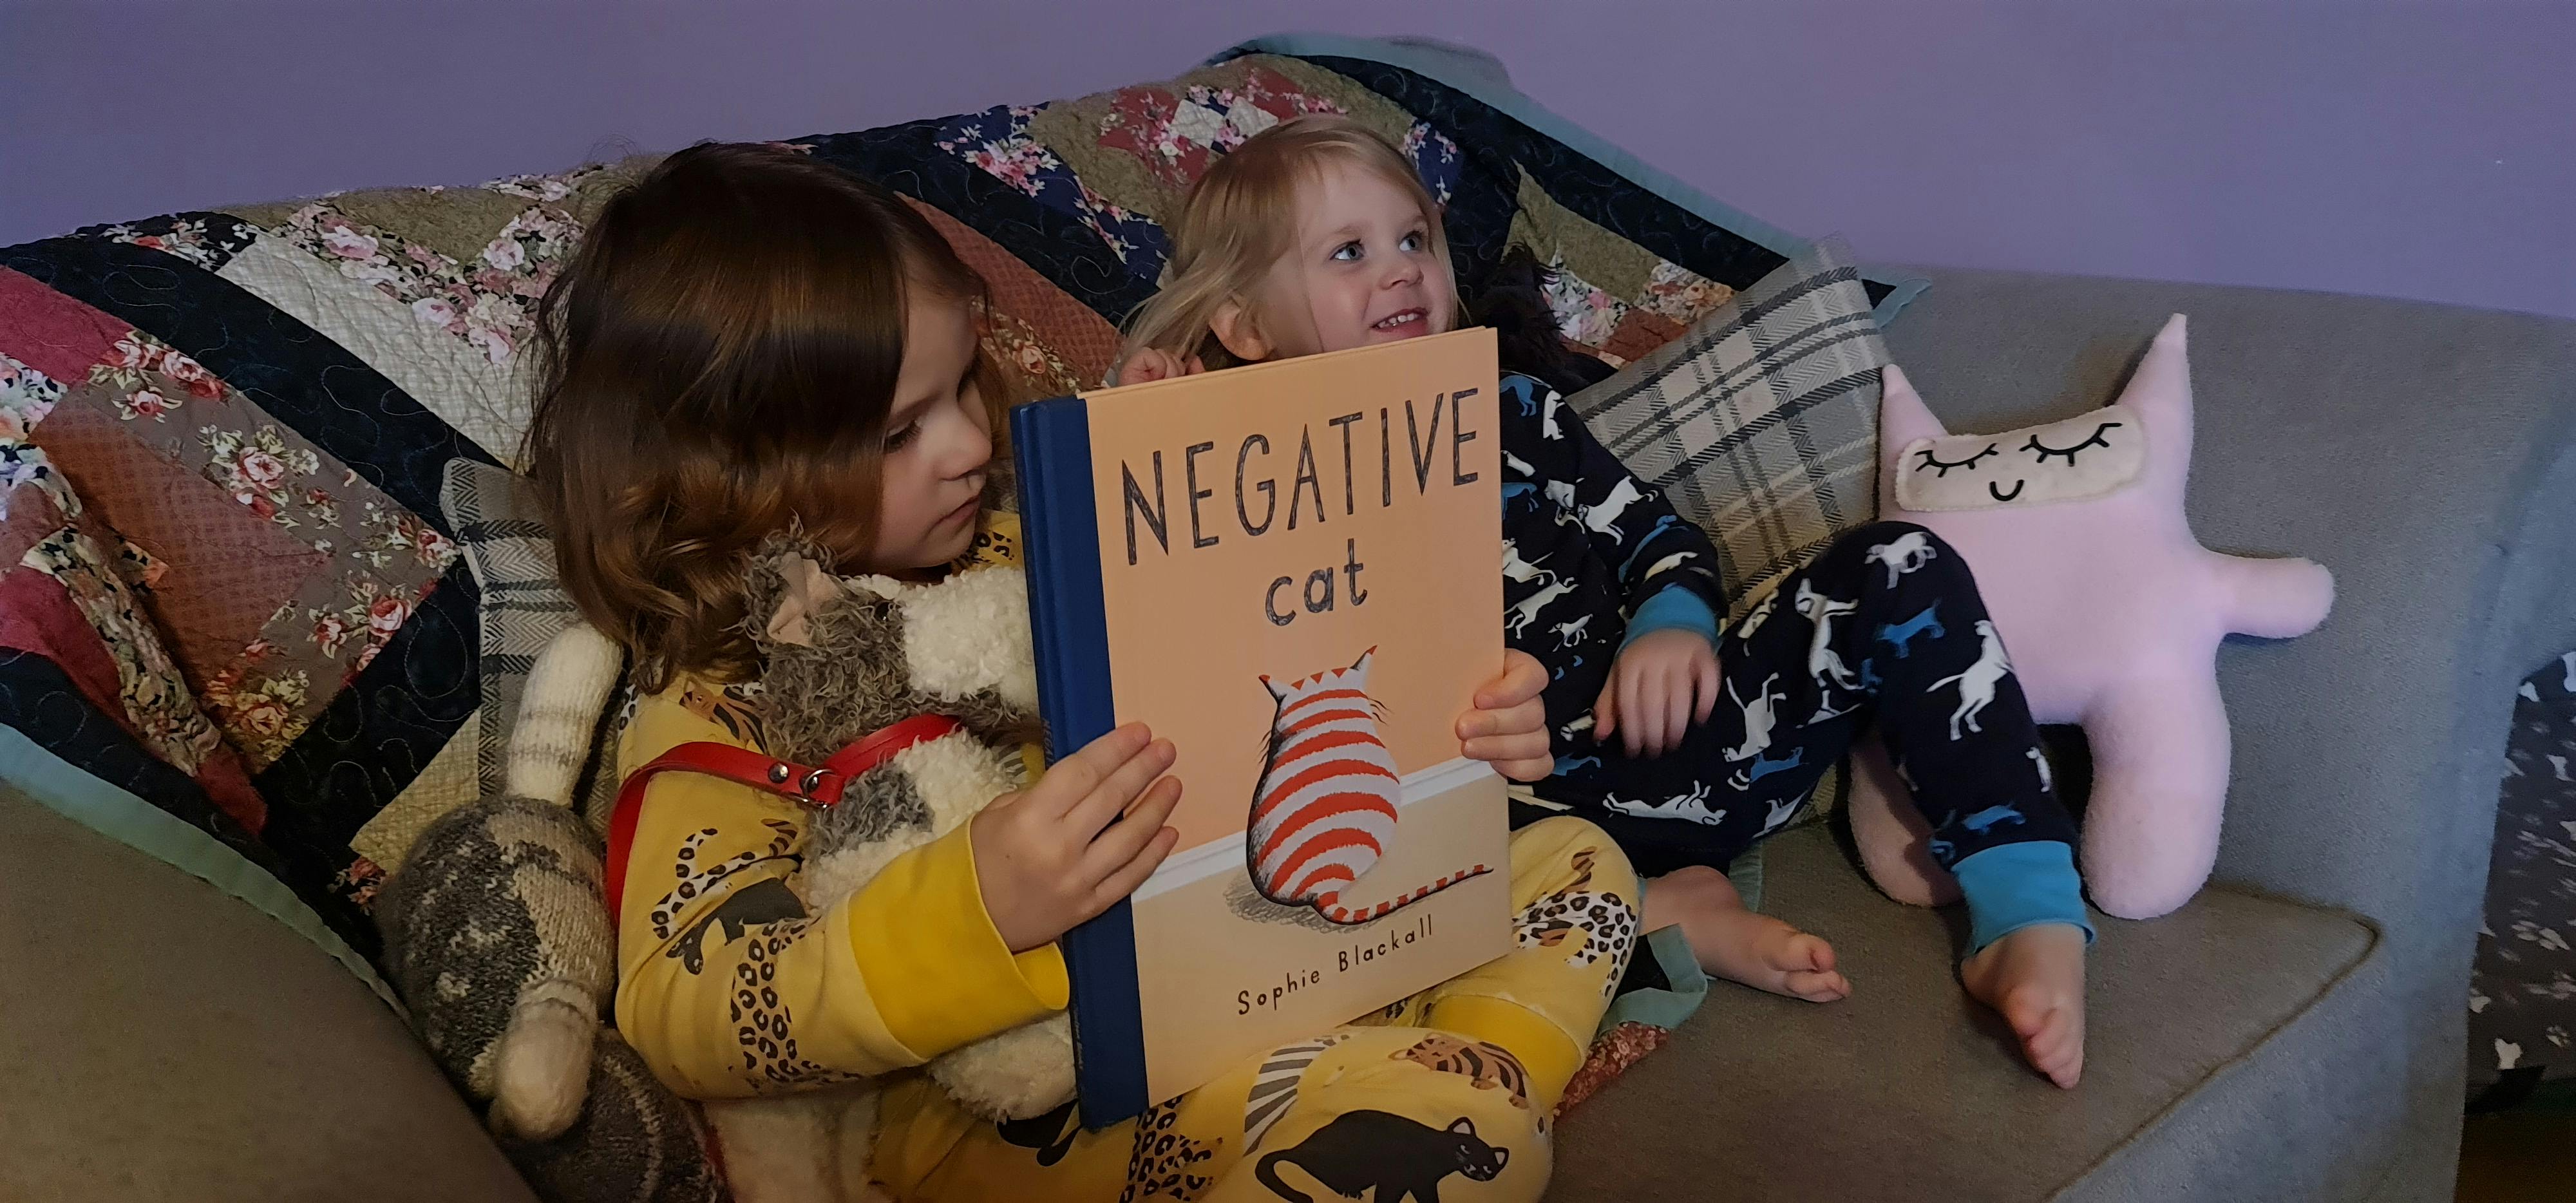 Negative cat